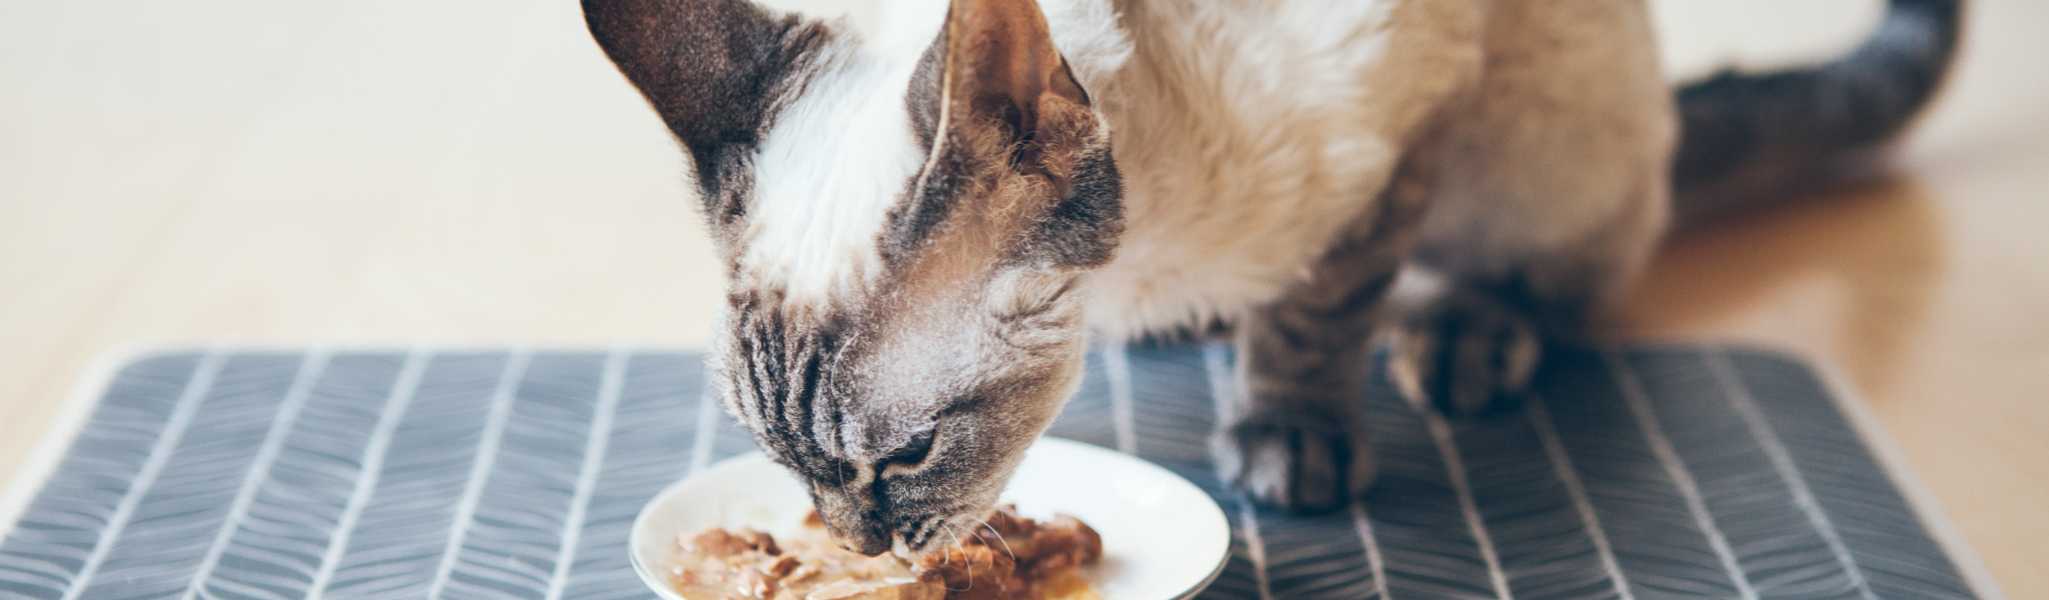 Alimentation du chat : les conseils des vétérinaires